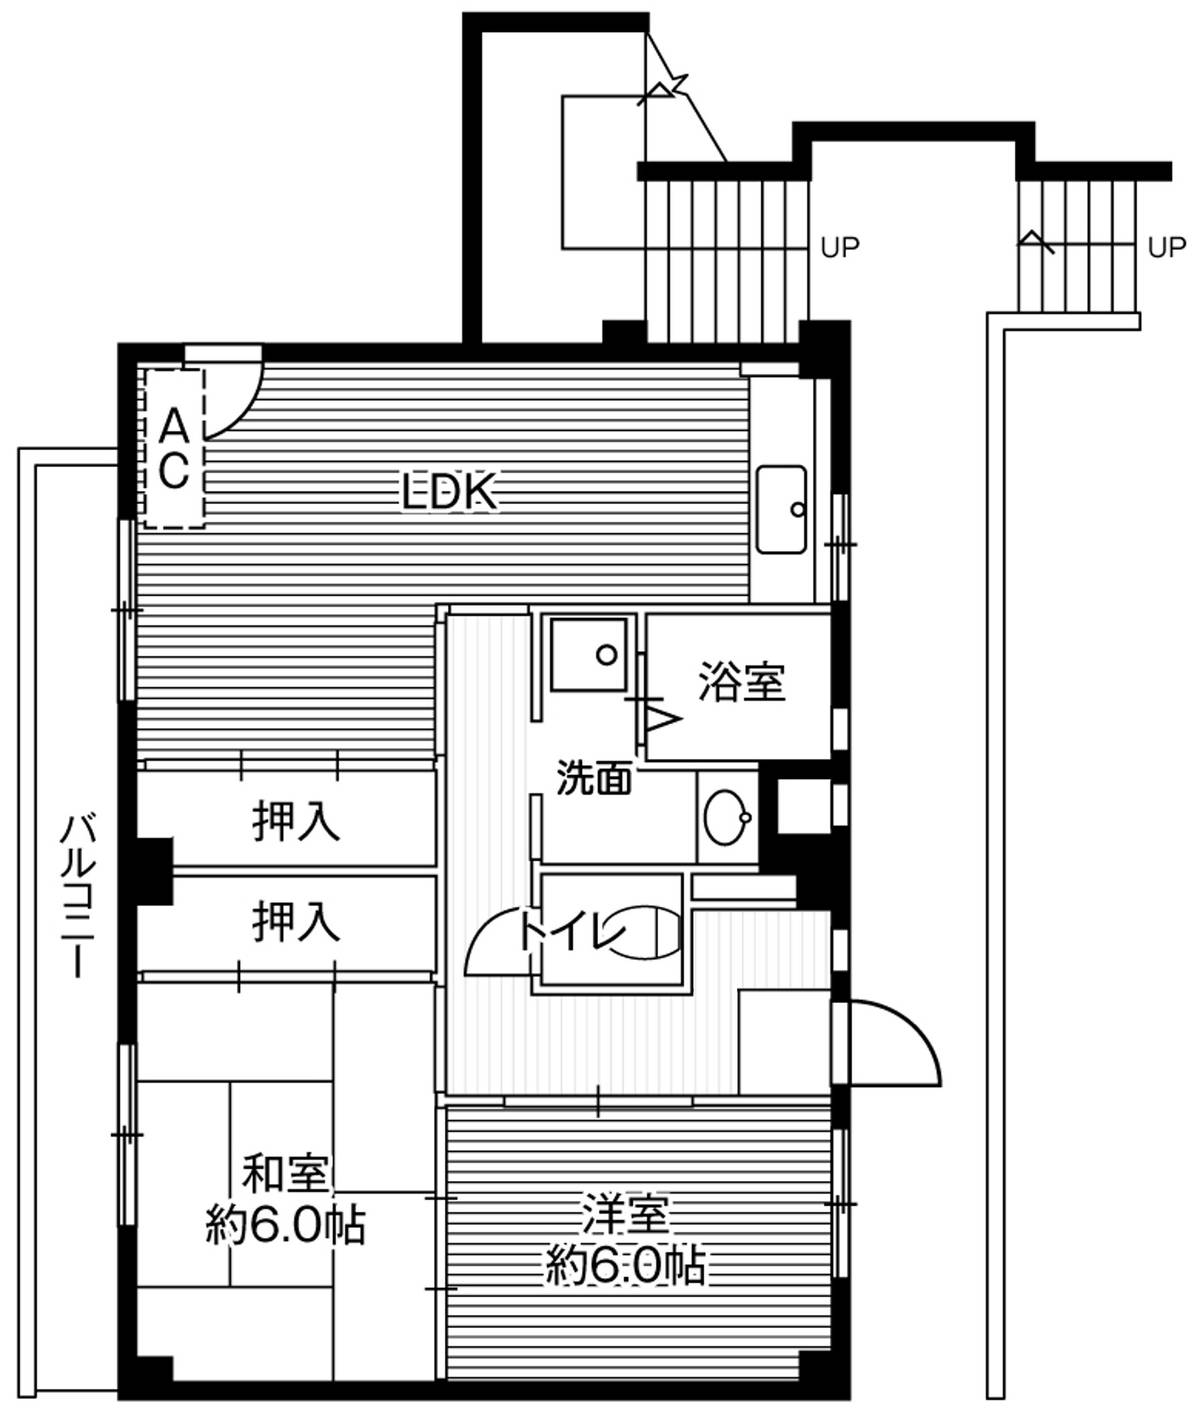 Sơ đồ phòng 2LDK của Village House Ichihara ở Ichihara-shi